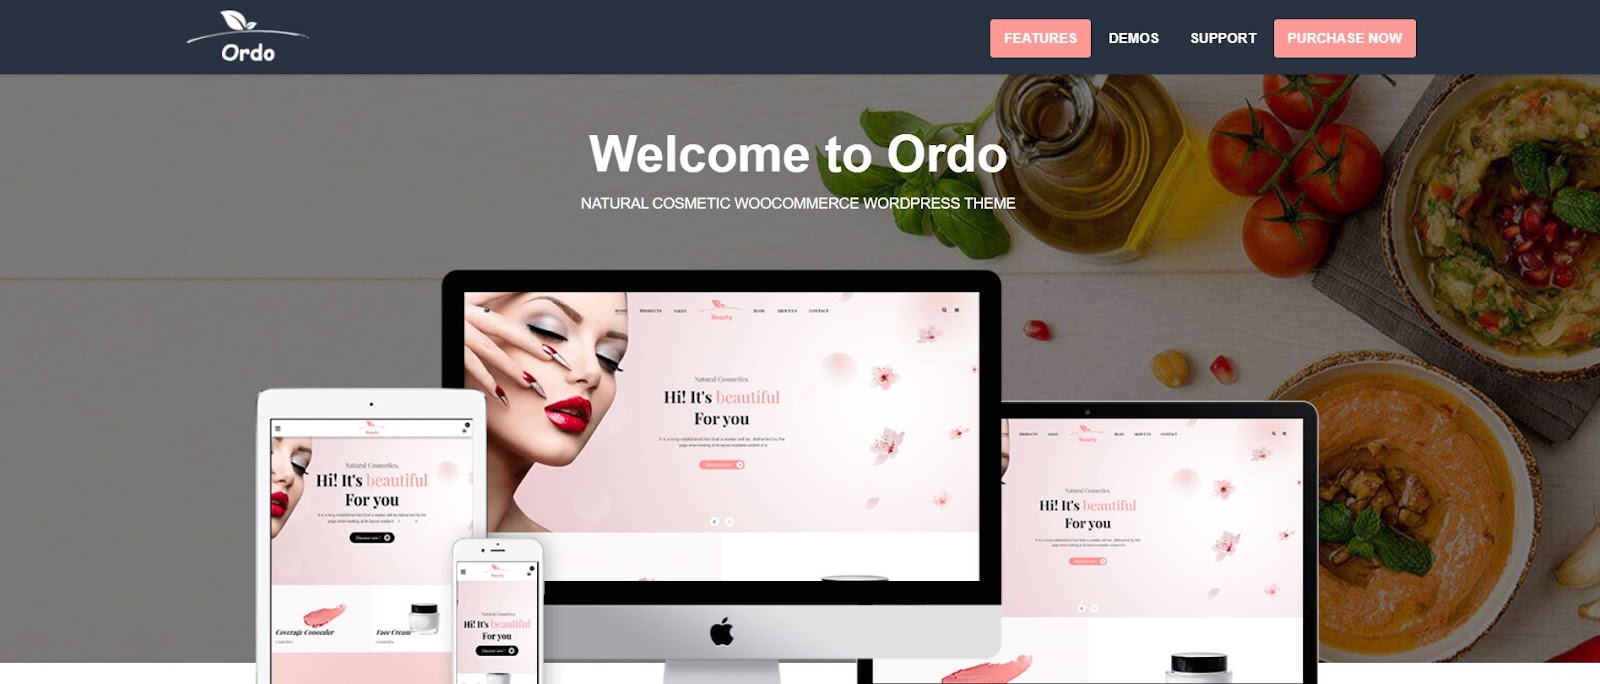 Ordo Natural Cosmetic WooCommerce WordPress Theme